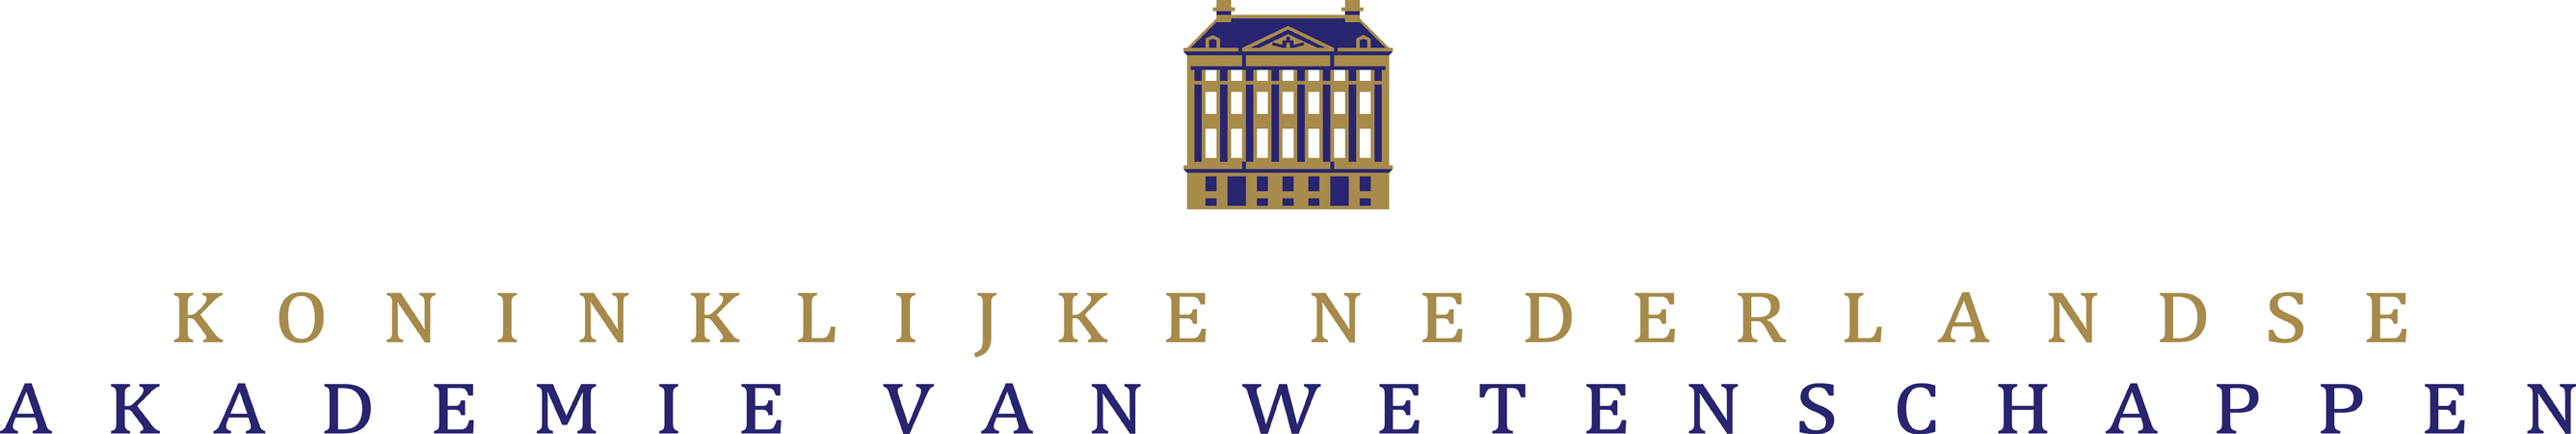 logo Koninklijke Nederlandse Akademie van Wetenschappen